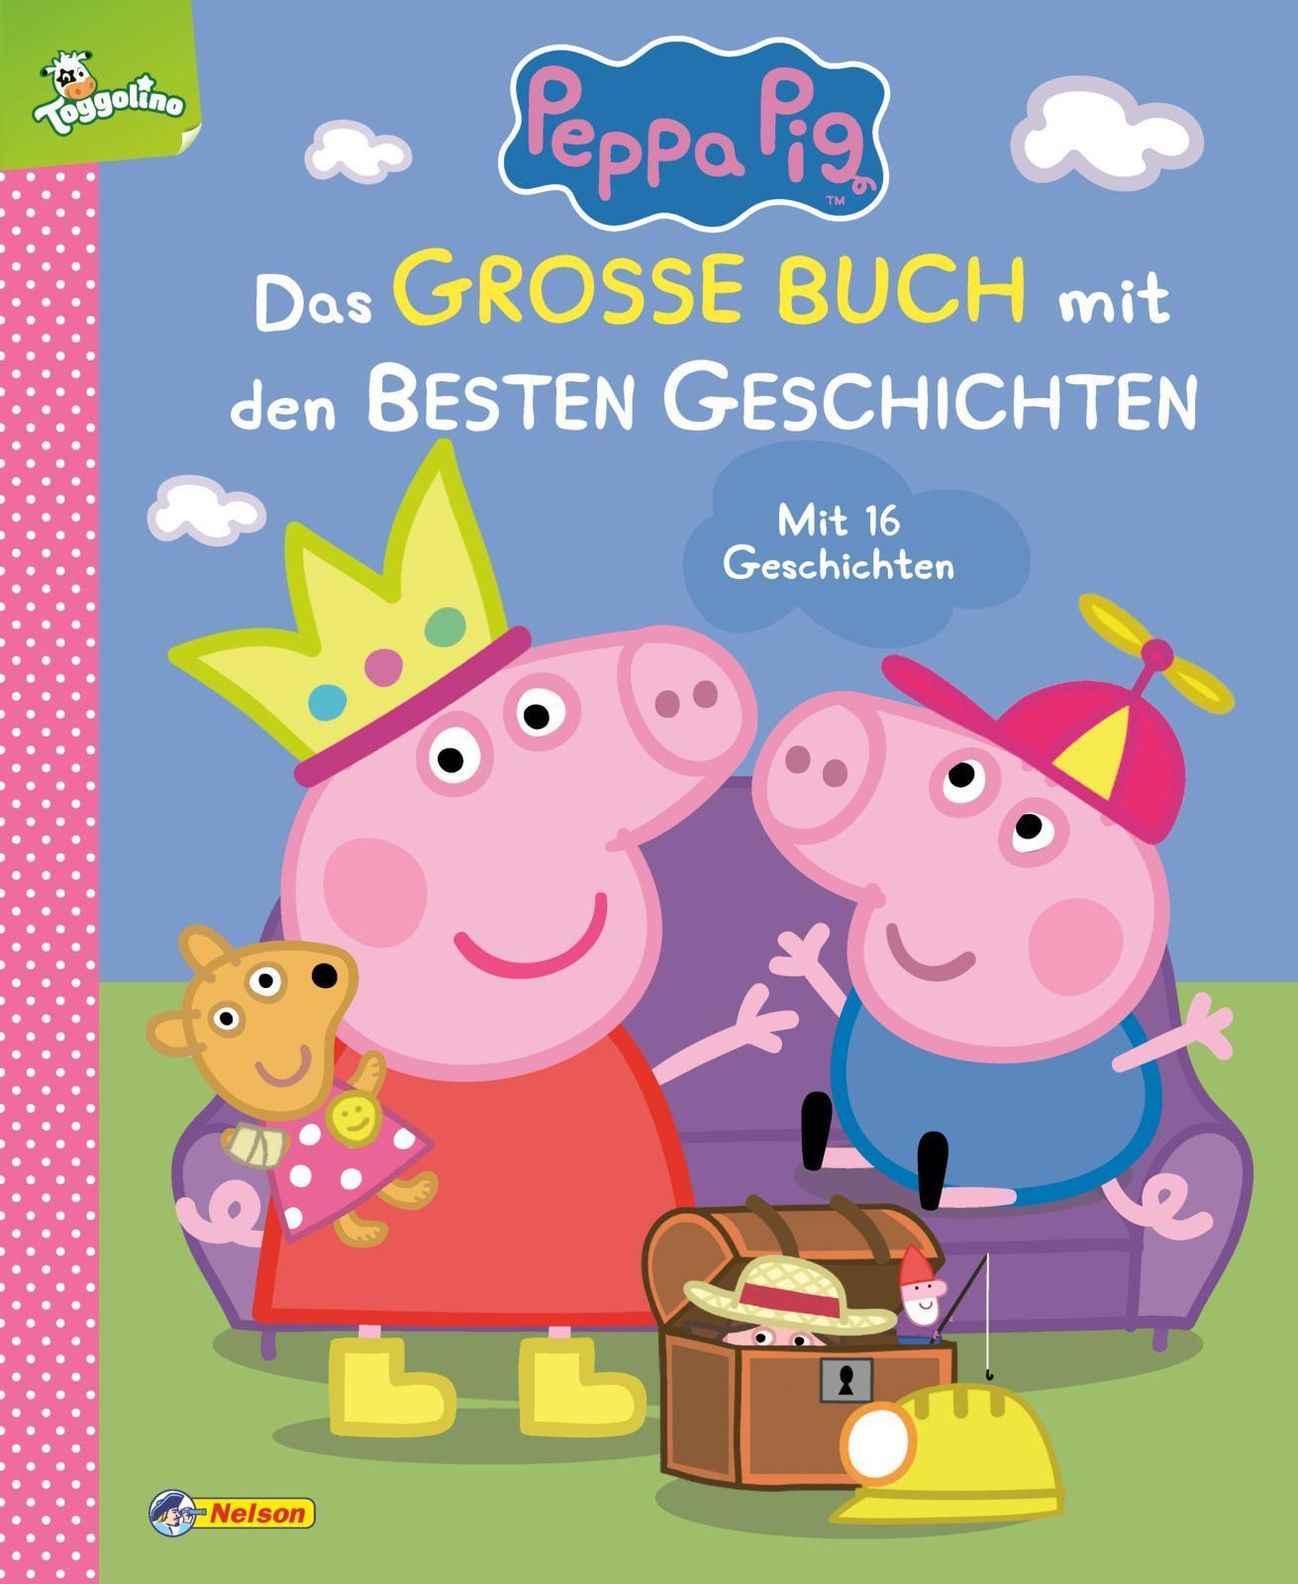 Peppa Pig: Peppa Pig: Das große Buch mit den besten Geschichten